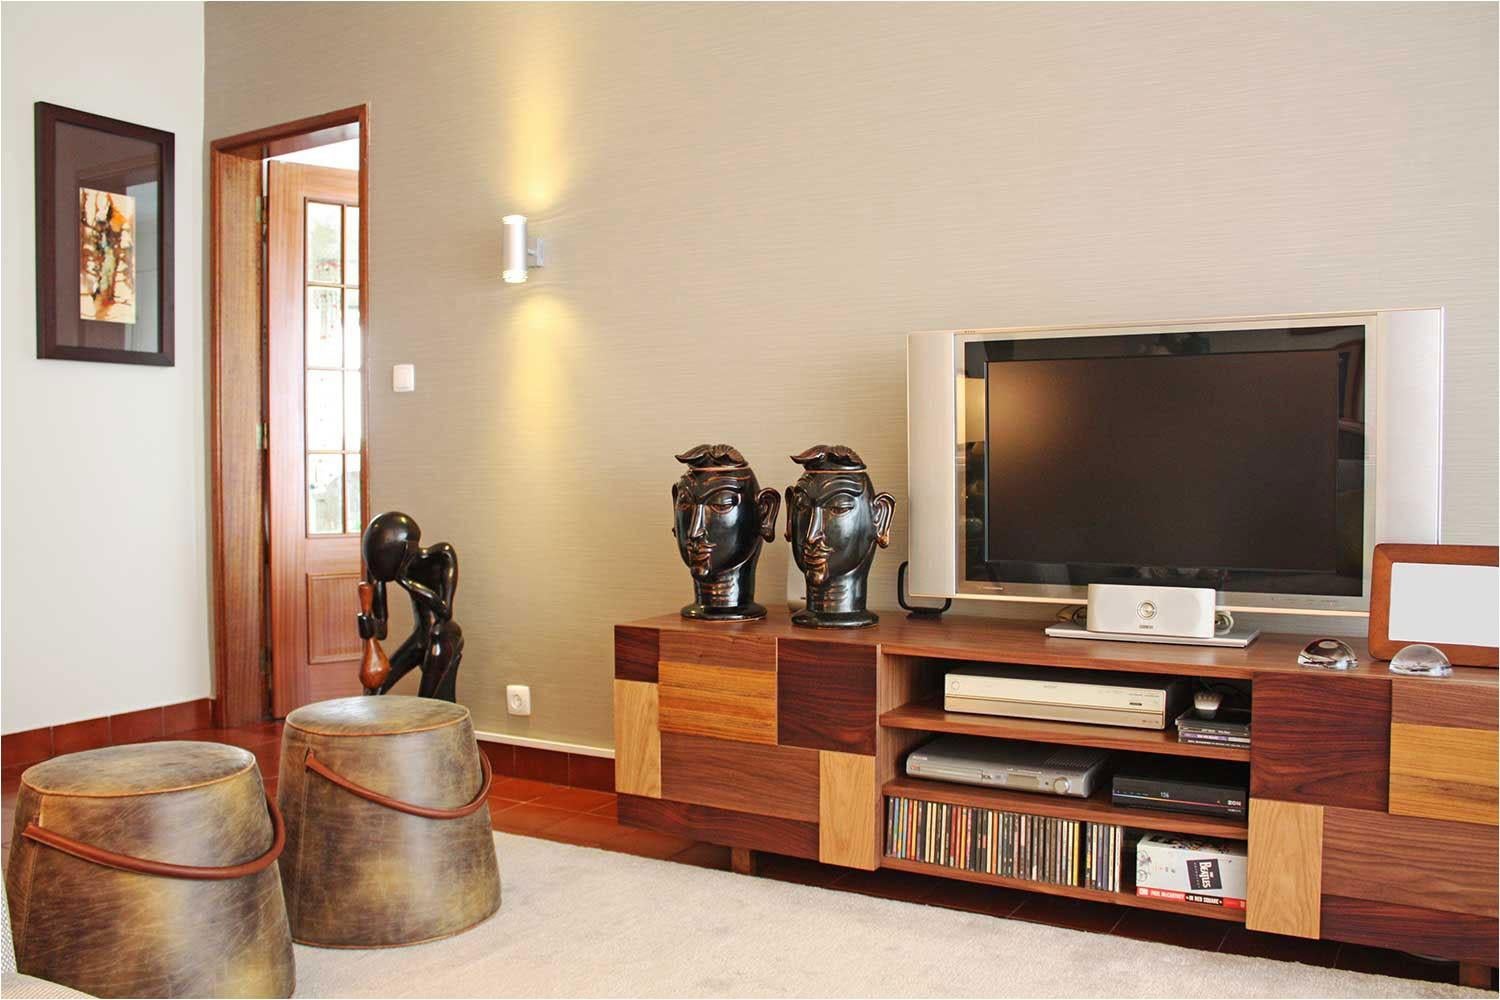 Form TV Stand ist ein hochwertiges Produkt von Mambo Unlimited ideas, gefertigt in poliertem oder mattem Holzfurnier Struktur und Füße, die Kombination von Eiche natur, Nussbaum natur, Nussbaum dunkel und Eisenholz, Messing-Anwendungen. Es zeichnet